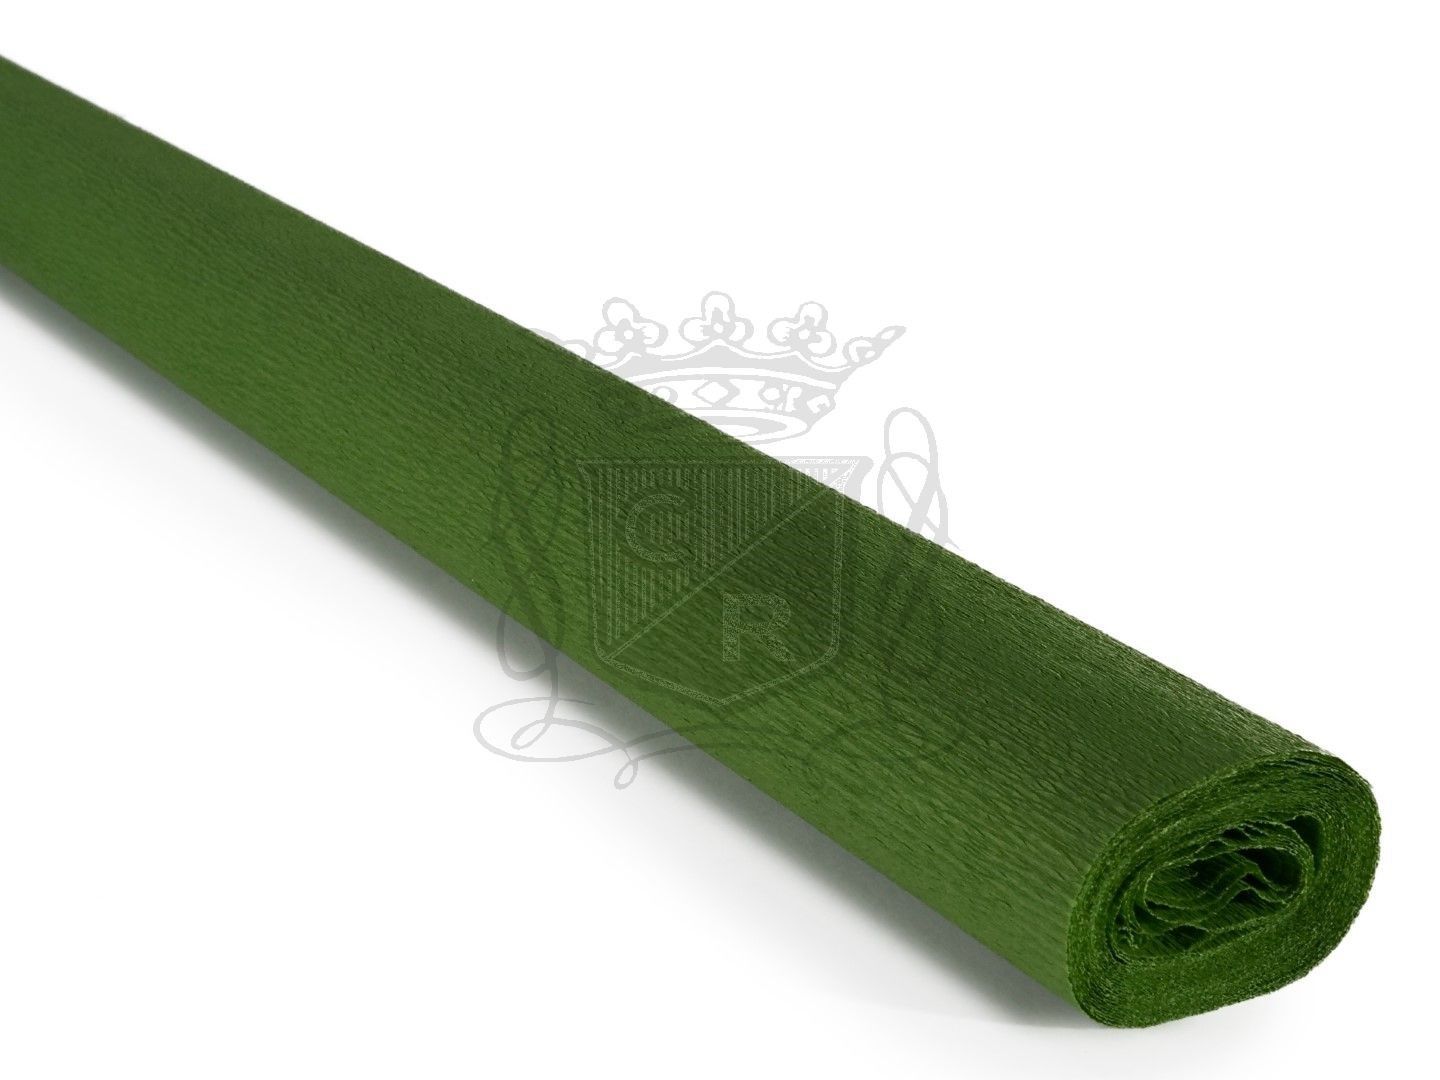 İtalyan Krapon Kağıdı No:265 Haki Yeşil 60 gr. 50*250 cm